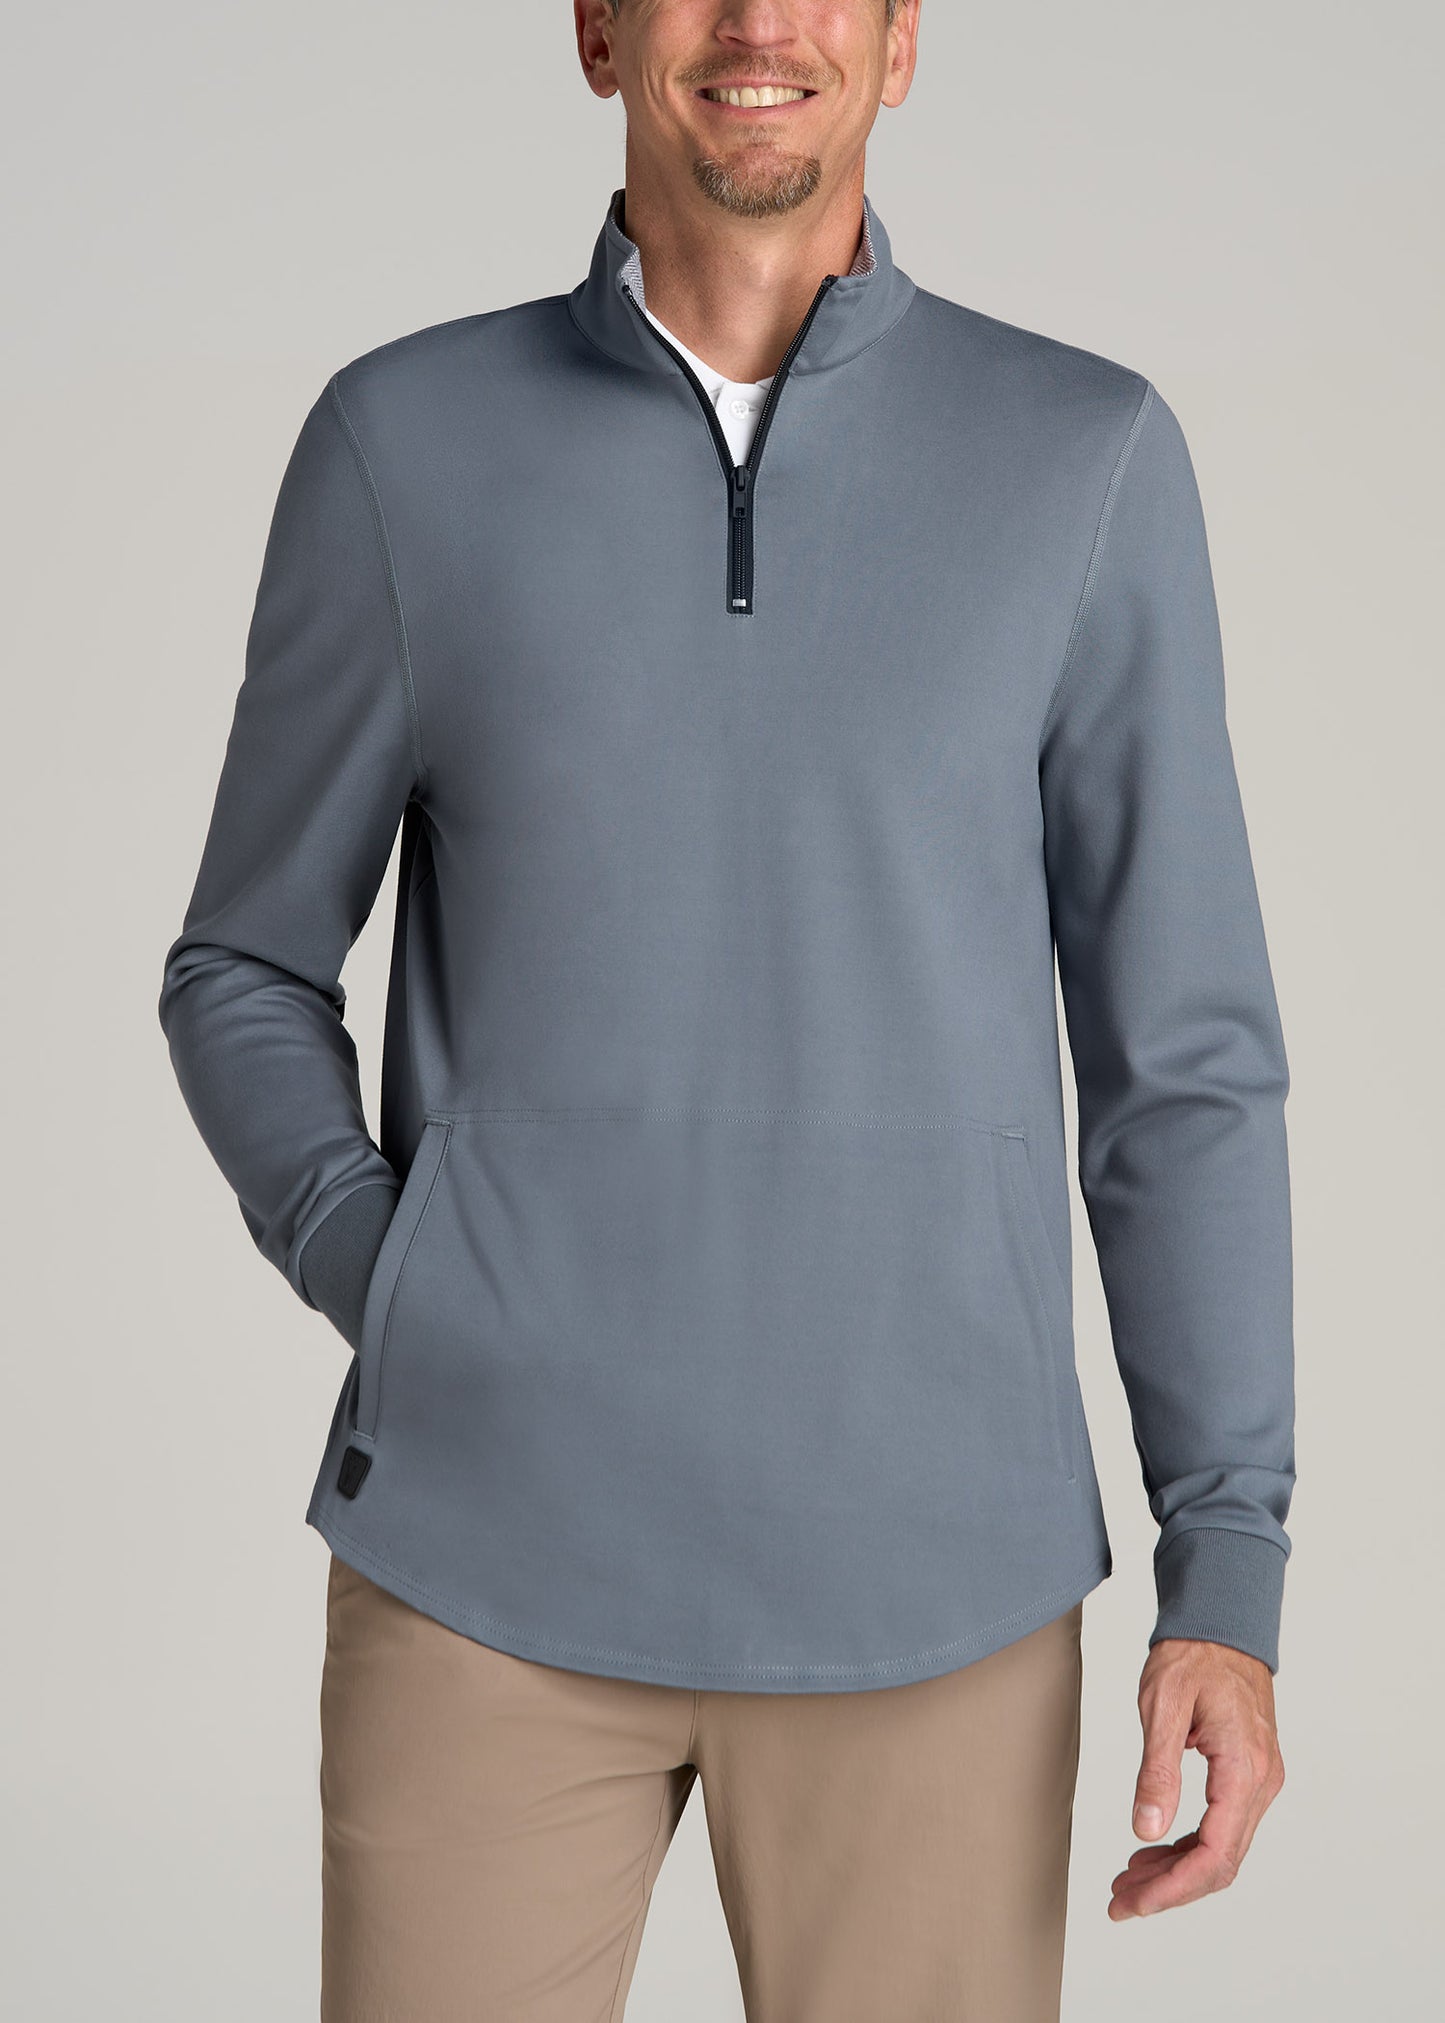 Fairway Popover Tall Men's Sweatshirt in Smoky Blue